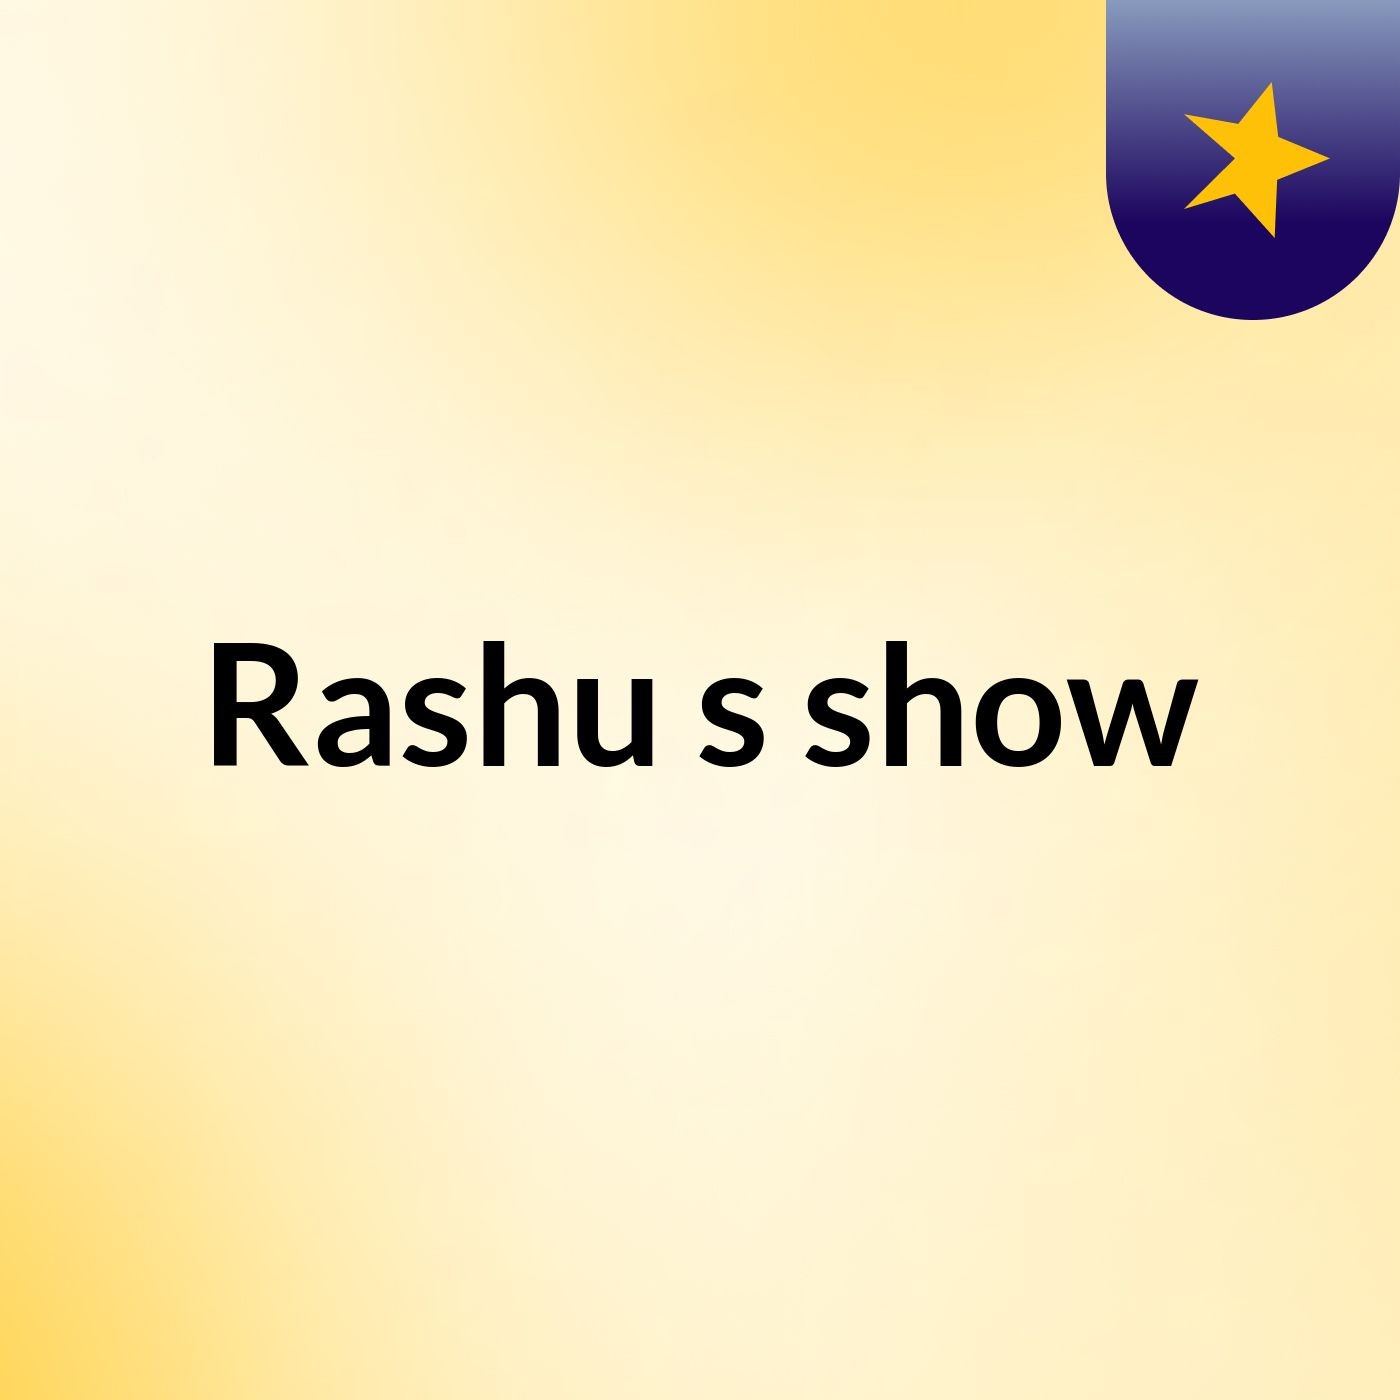 Rashu's show